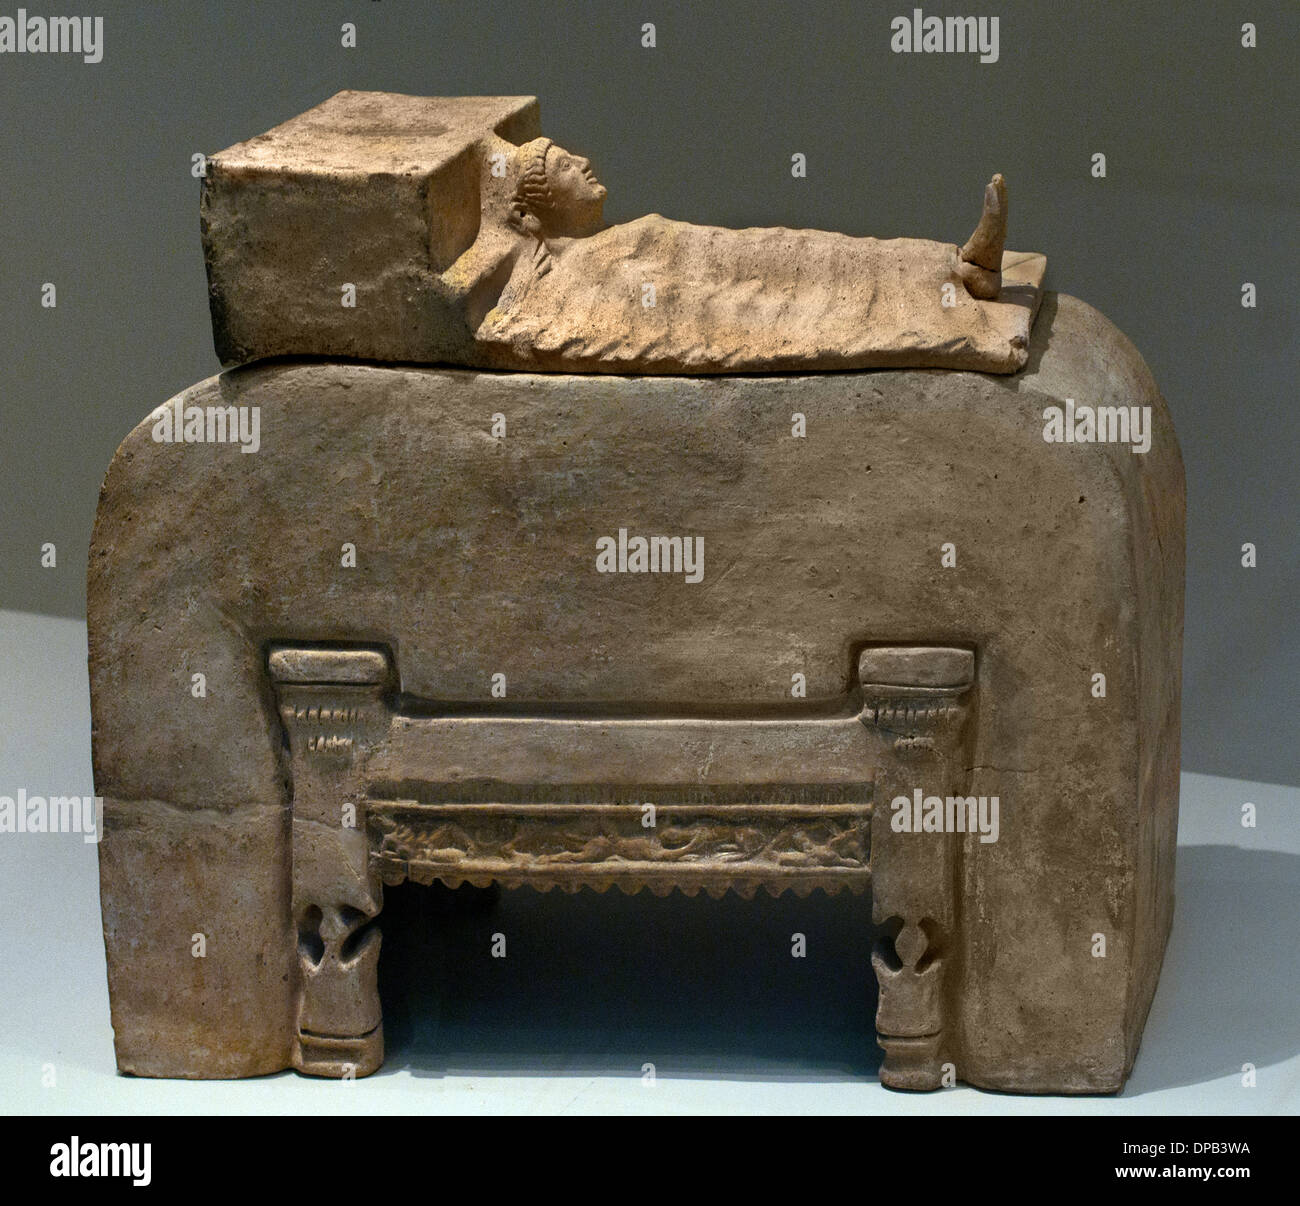 Zurückzuführen Funerary Bestattung Urne (Anzeige eines Körpers auf dem funerary Bett) 510 v. Chr. Cerveteri Etrusker Nekropole Toskana Italien Stockfoto